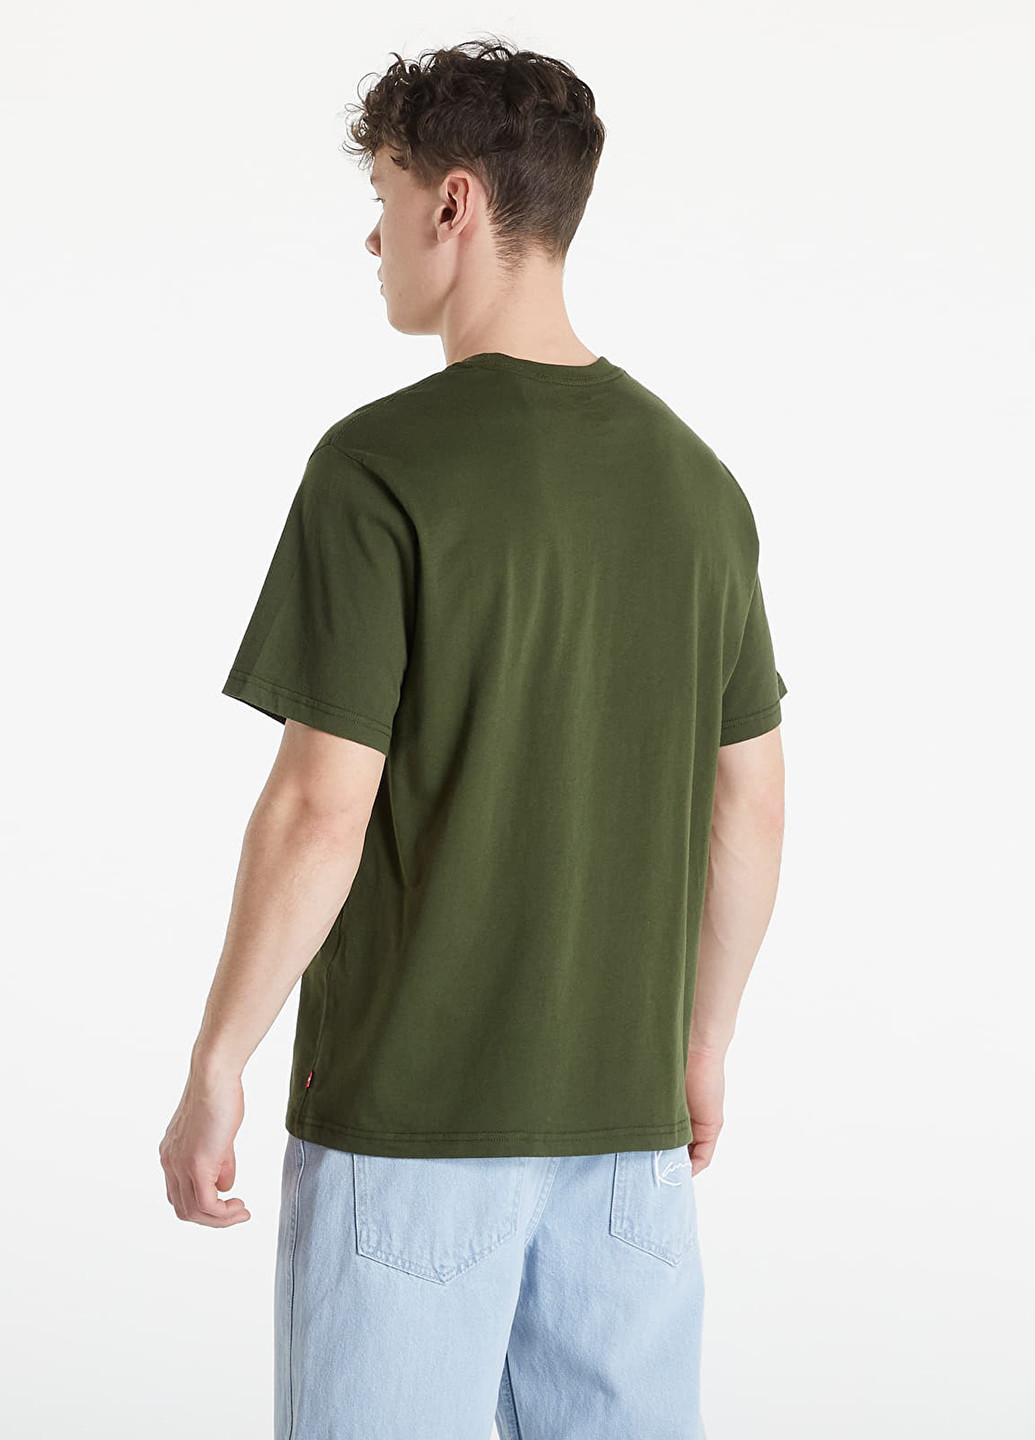 Зелена літня футболка Levi's